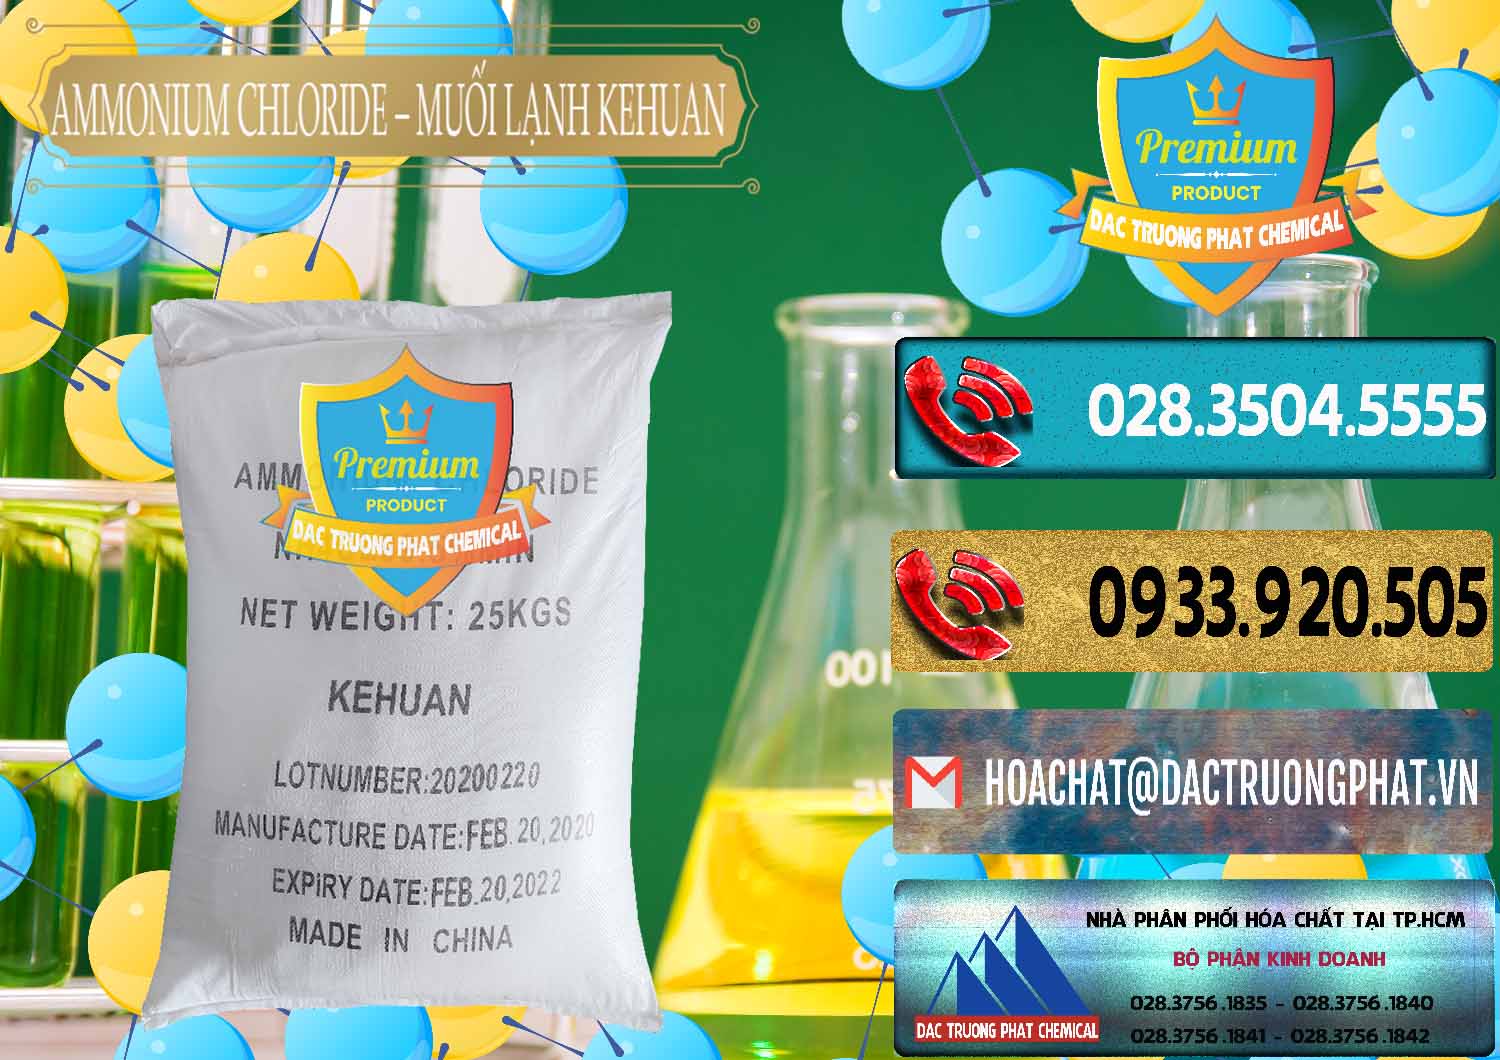 Nơi cung ứng & bán Ammonium Chloride – NH4CL Muối Lạnh Kehuan Trung Quốc China - 0022 - Kinh doanh - phân phối hóa chất tại TP.HCM - hoachatdetnhuom.com